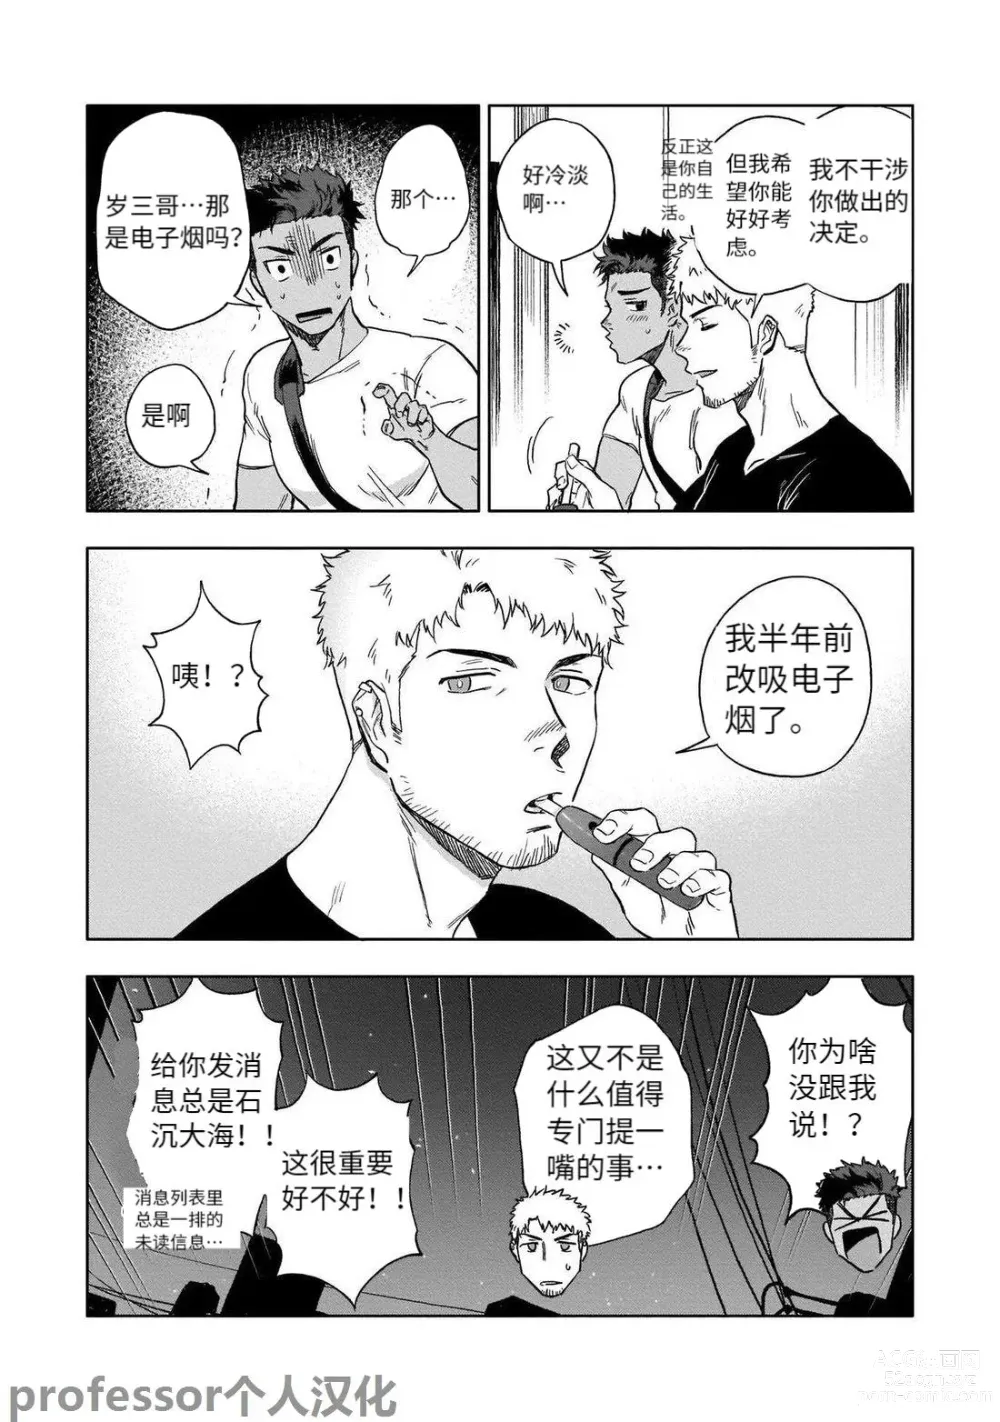 Page 6 of manga HIDK